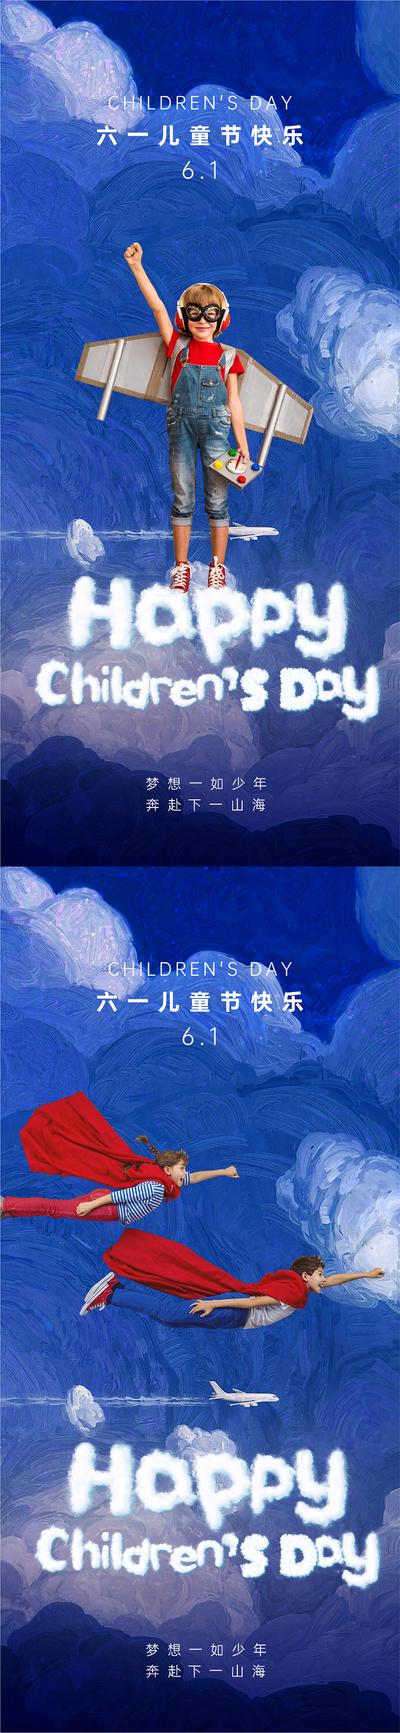 南门网 广告 海报 地产 儿童节 创意 六一 云 云层 飞翔 天空 自由 宇宙 飞机 梦想 孩子